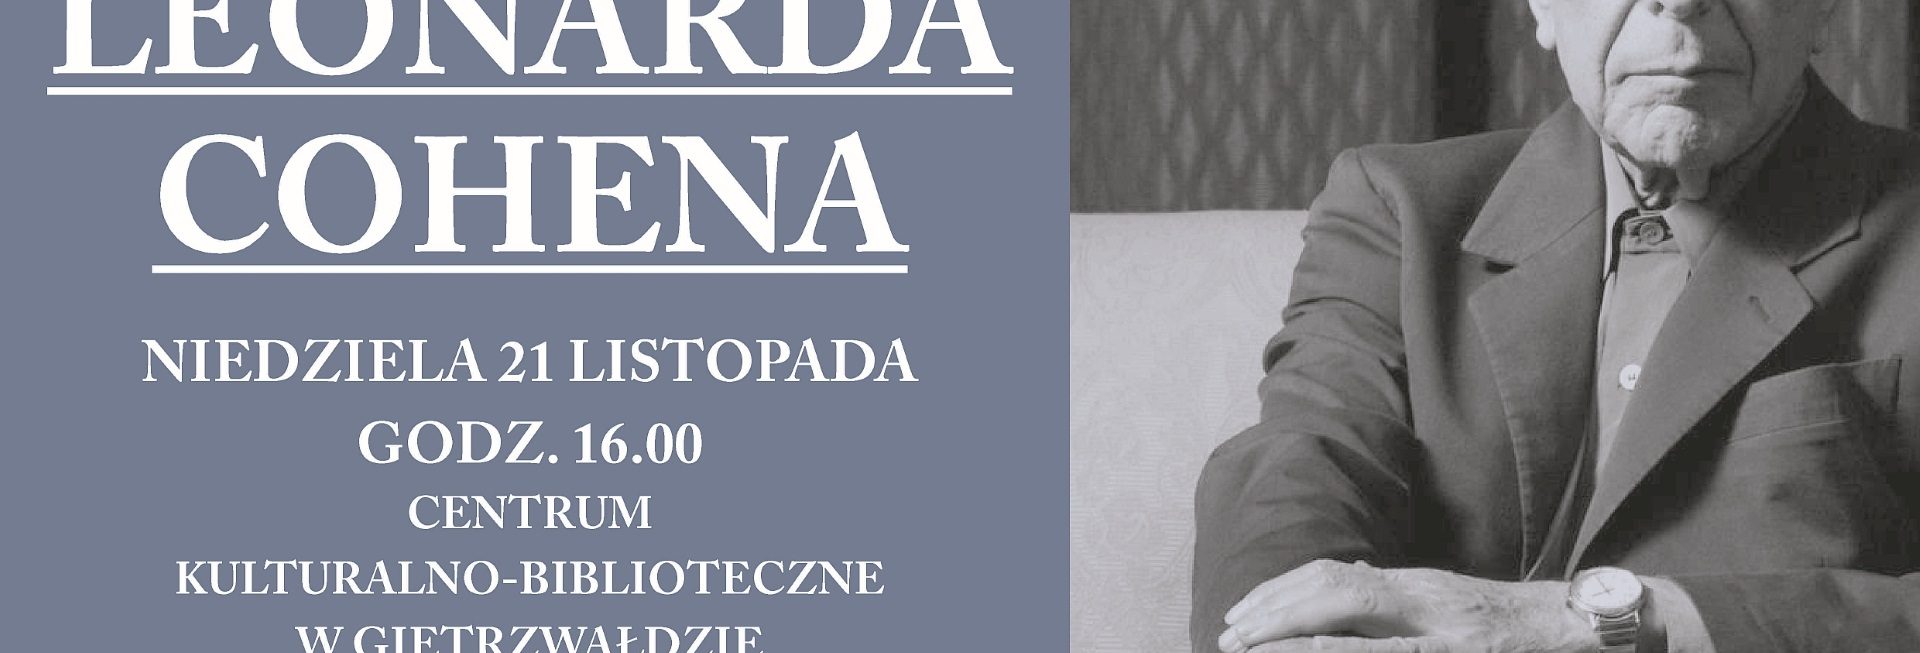 Plakat graficzny zapraszający do Gietrzwałdu na koncert IV Memoriał LEONARDA COHENA - Gietrzwałd 2021.